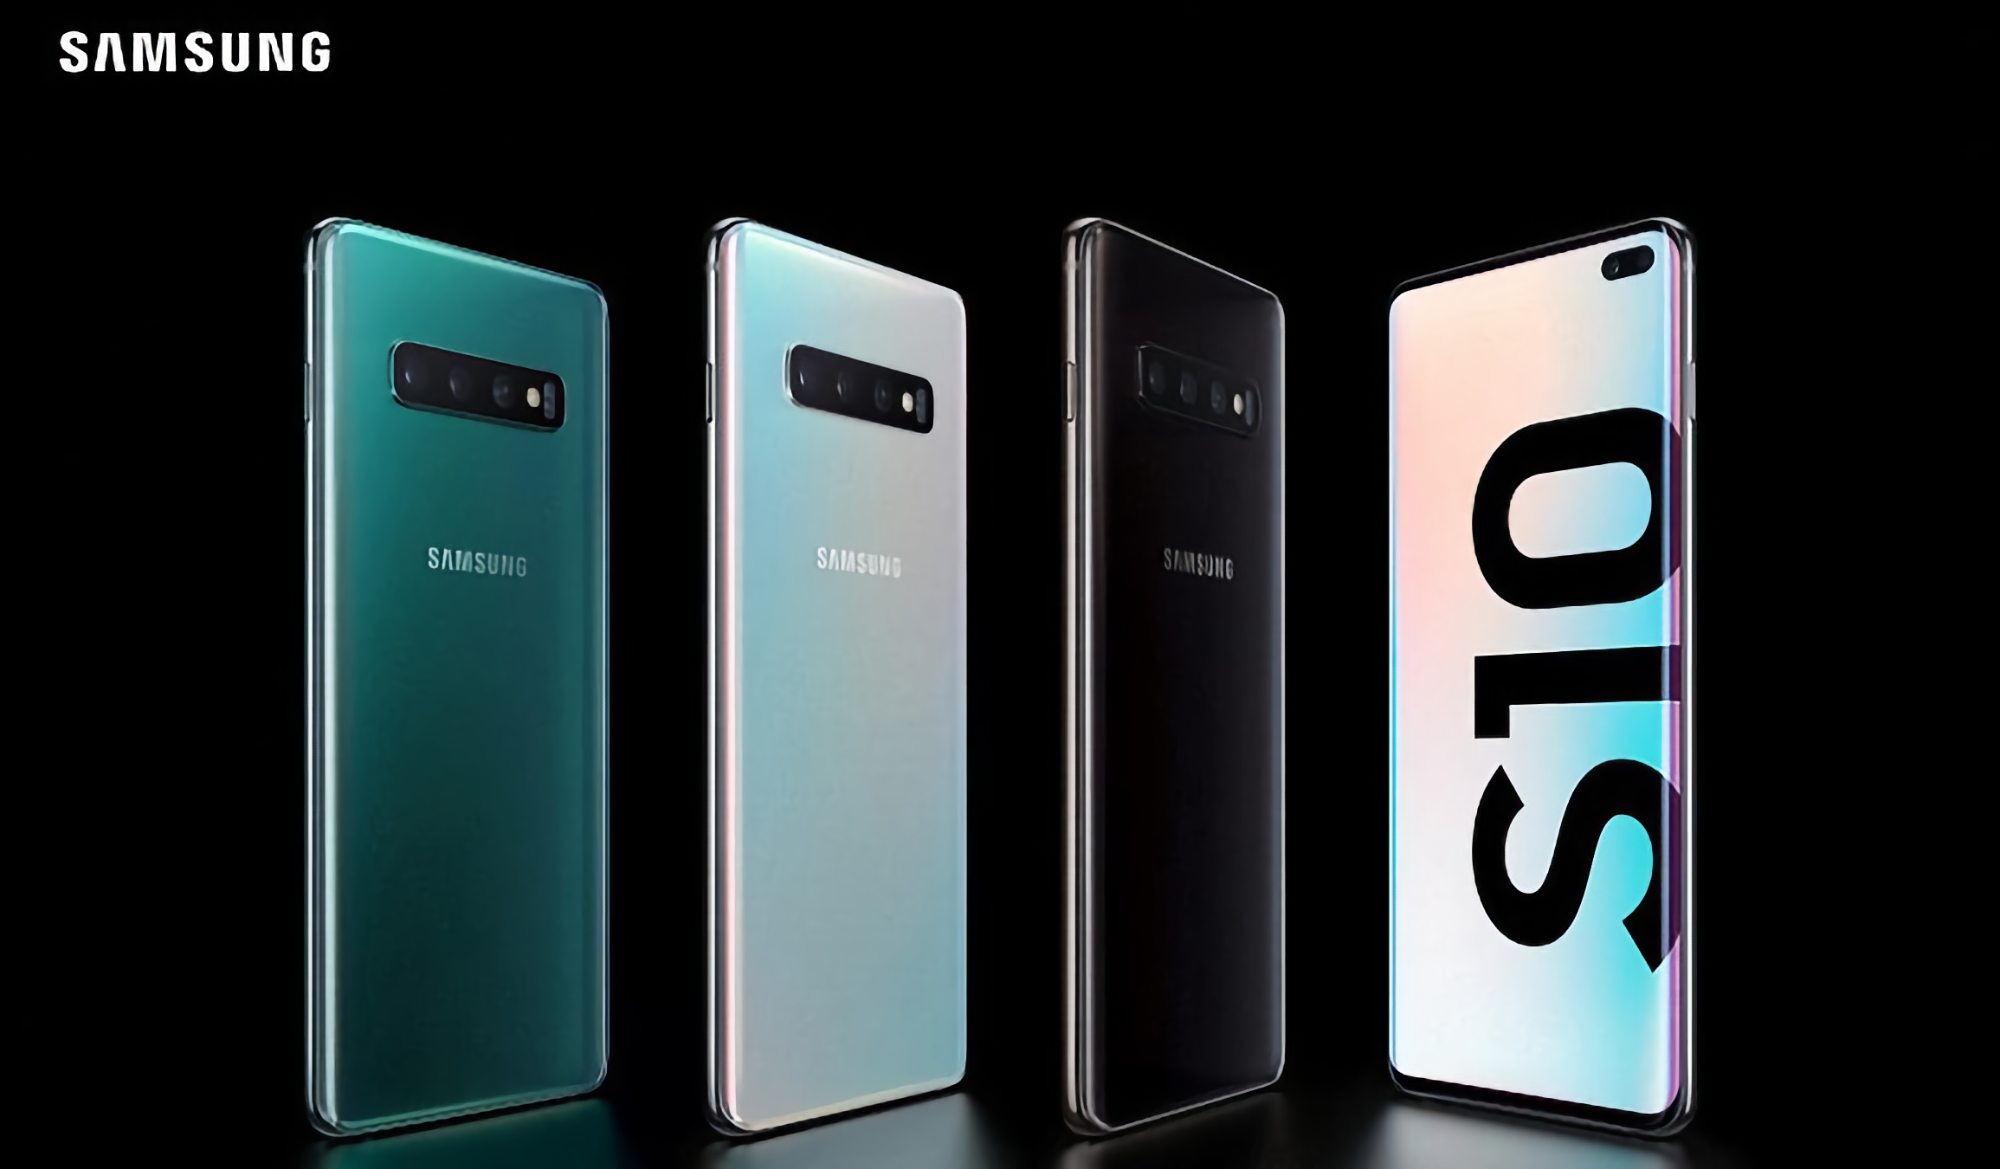 Samsung Galaxy S10e, Galaxy S10, Galaxy S10+ und Galaxy S20 FE erhalten seit September Updates